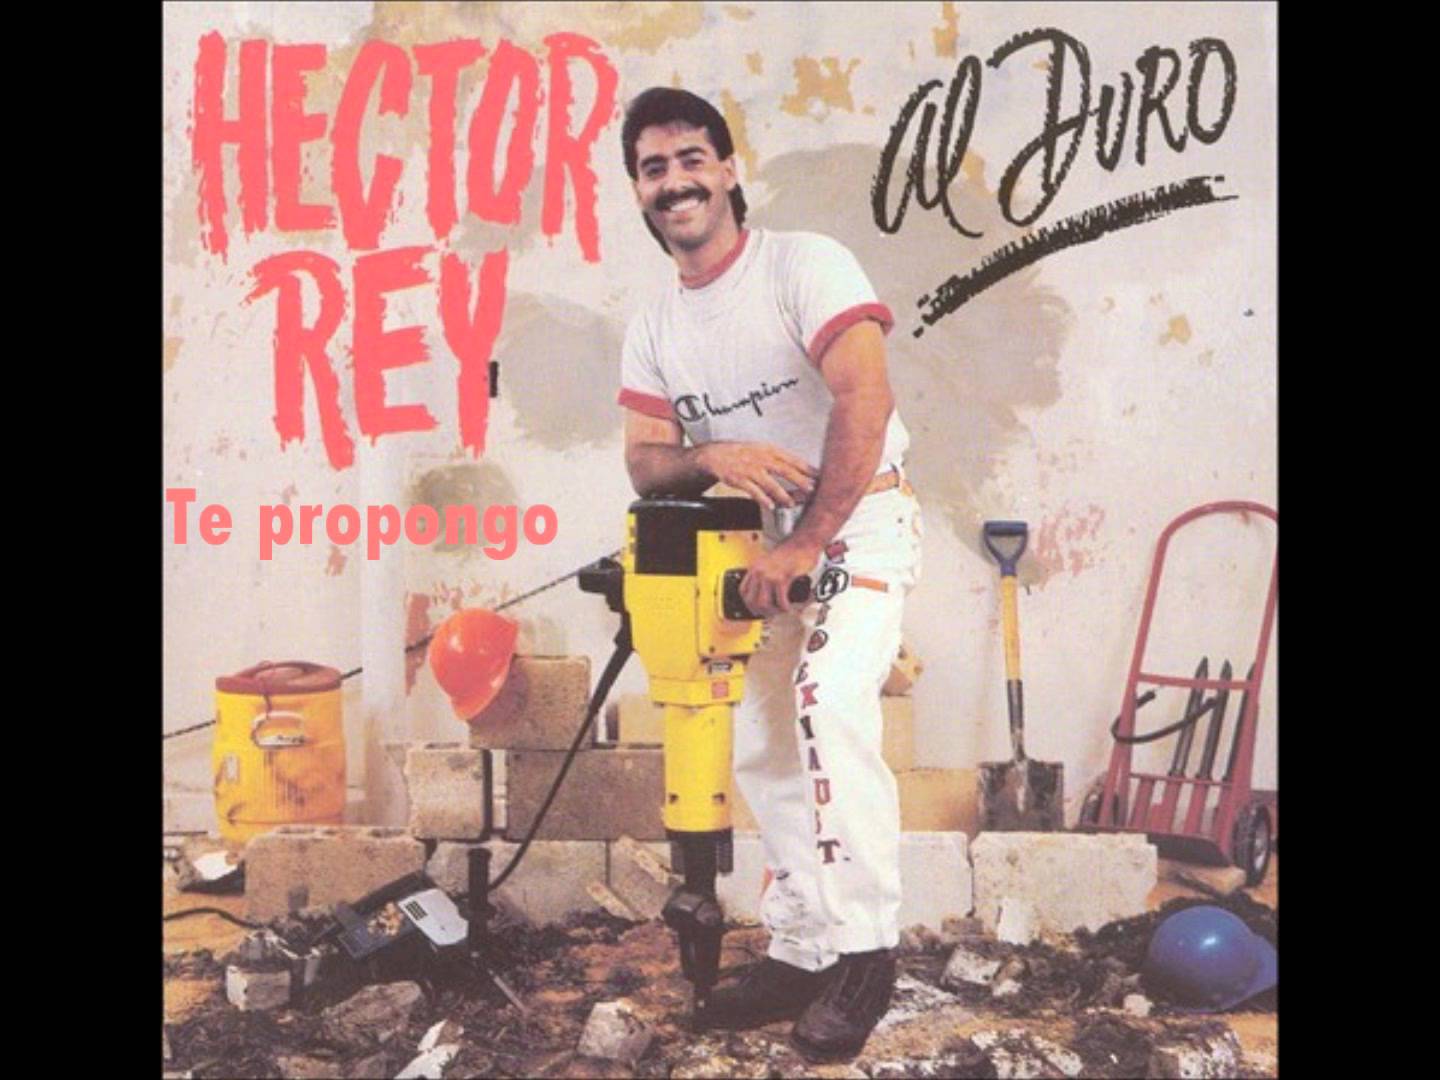 Hector Rey